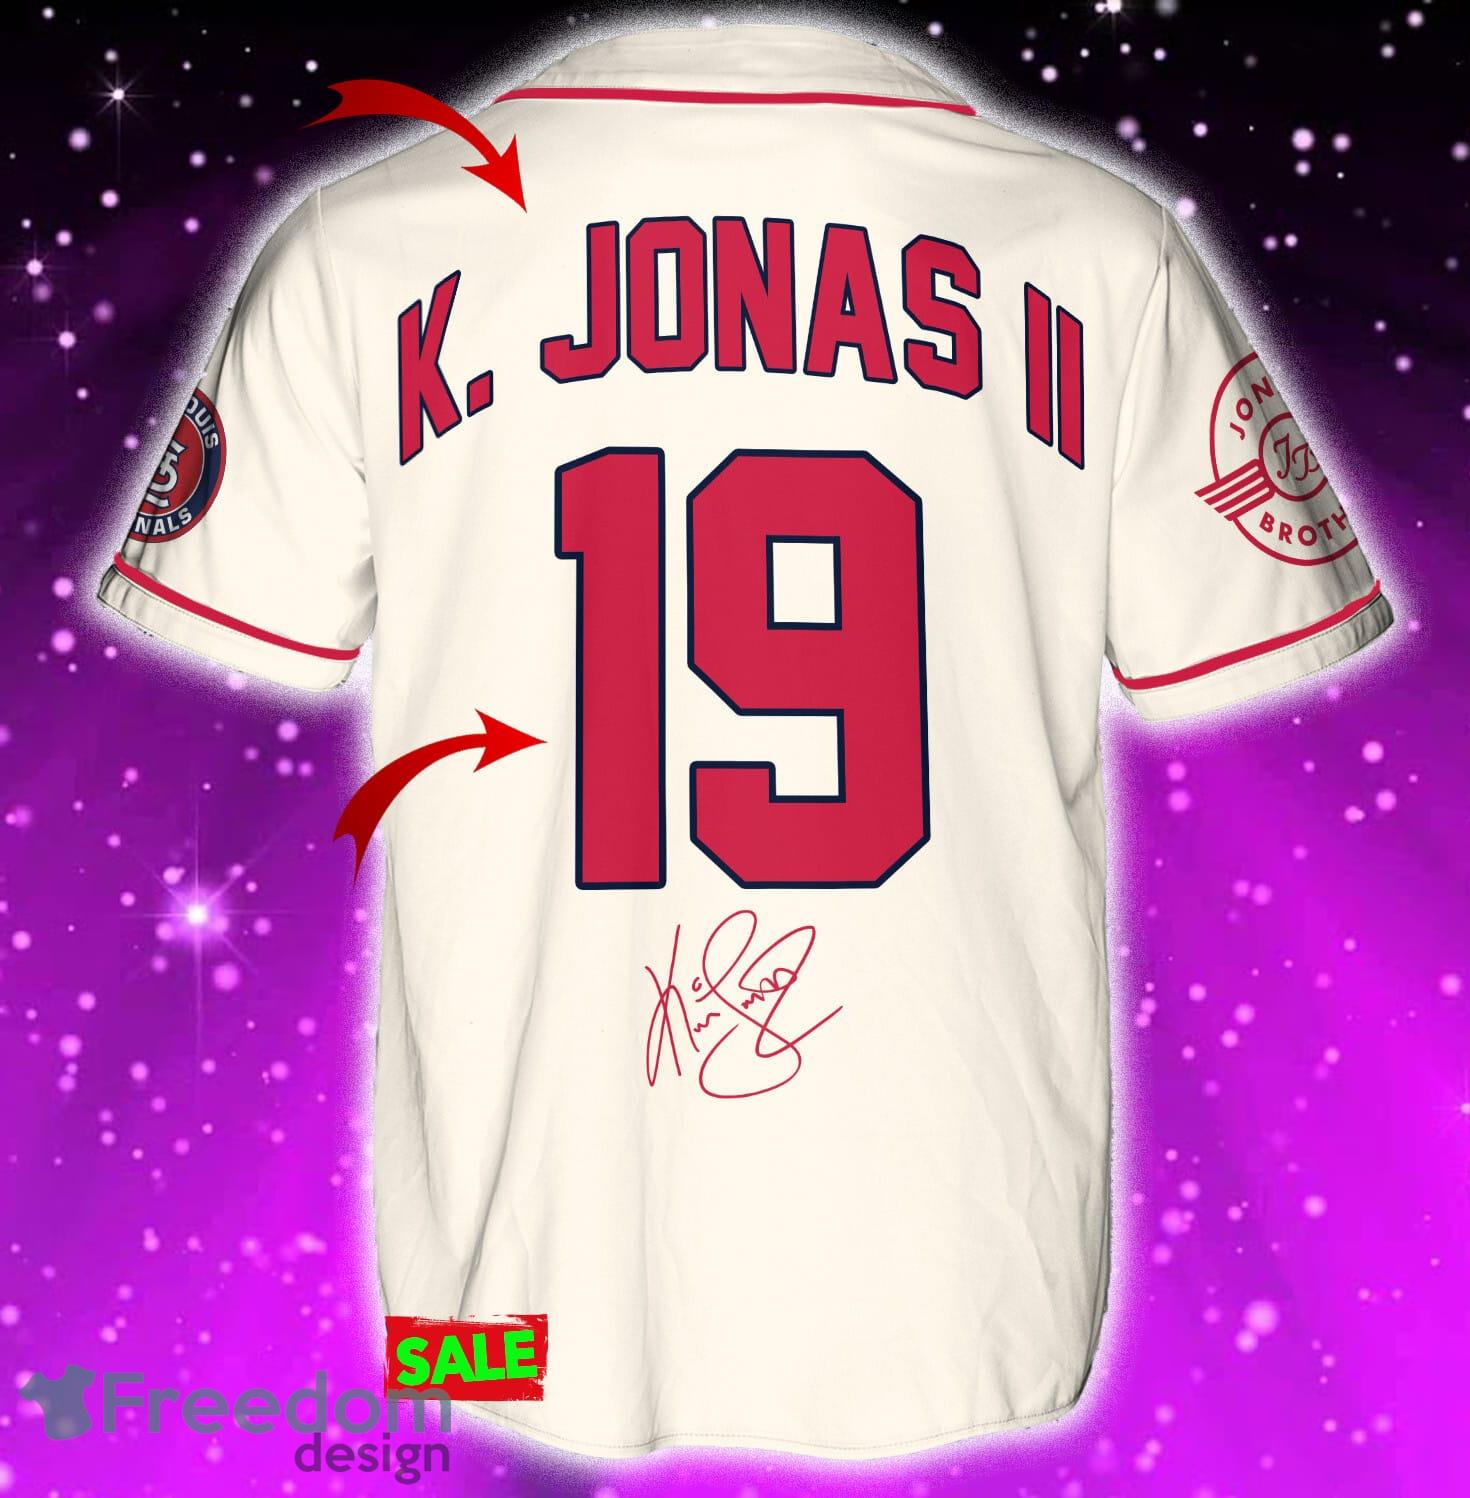 St.Louis Cardinals Cream Baseball Jersey by K. Jonas - Scesy